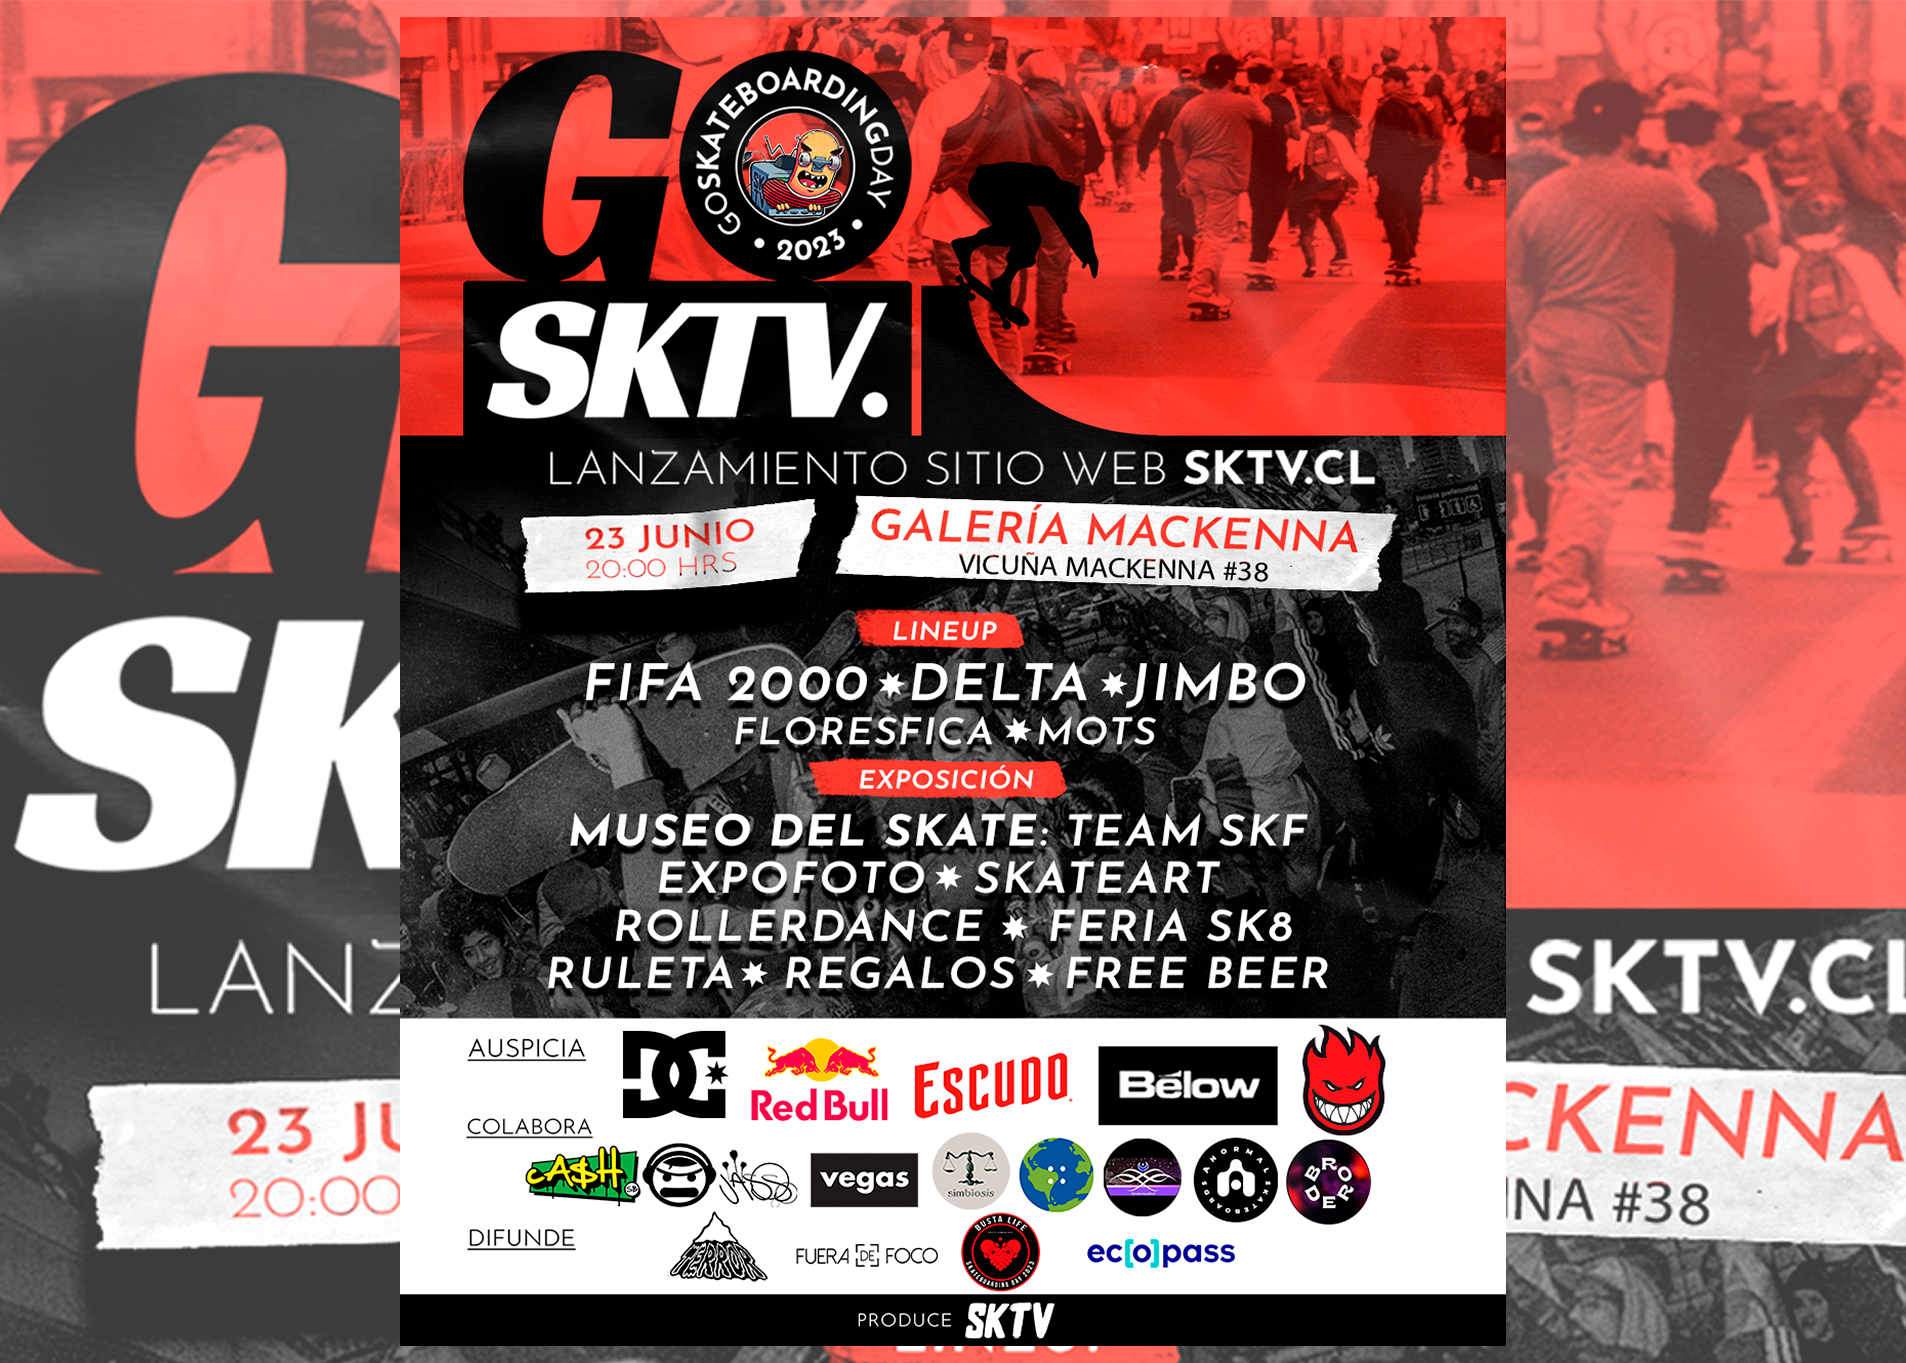 GOSKTVDAY! Lanzamiento oficial sktv.cl!